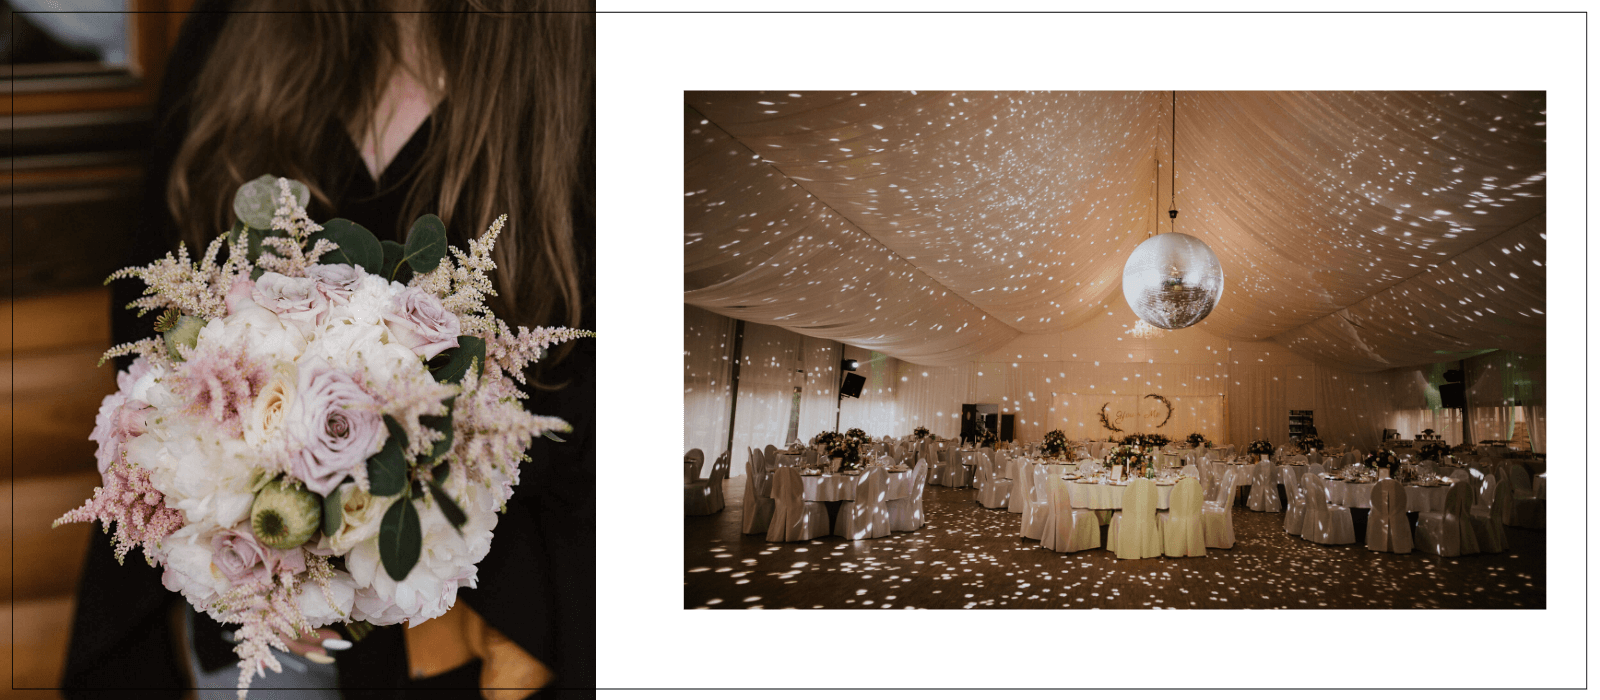  pomysł na ślubne dekoracje Natalia Czop inLove / Design Your Wedding